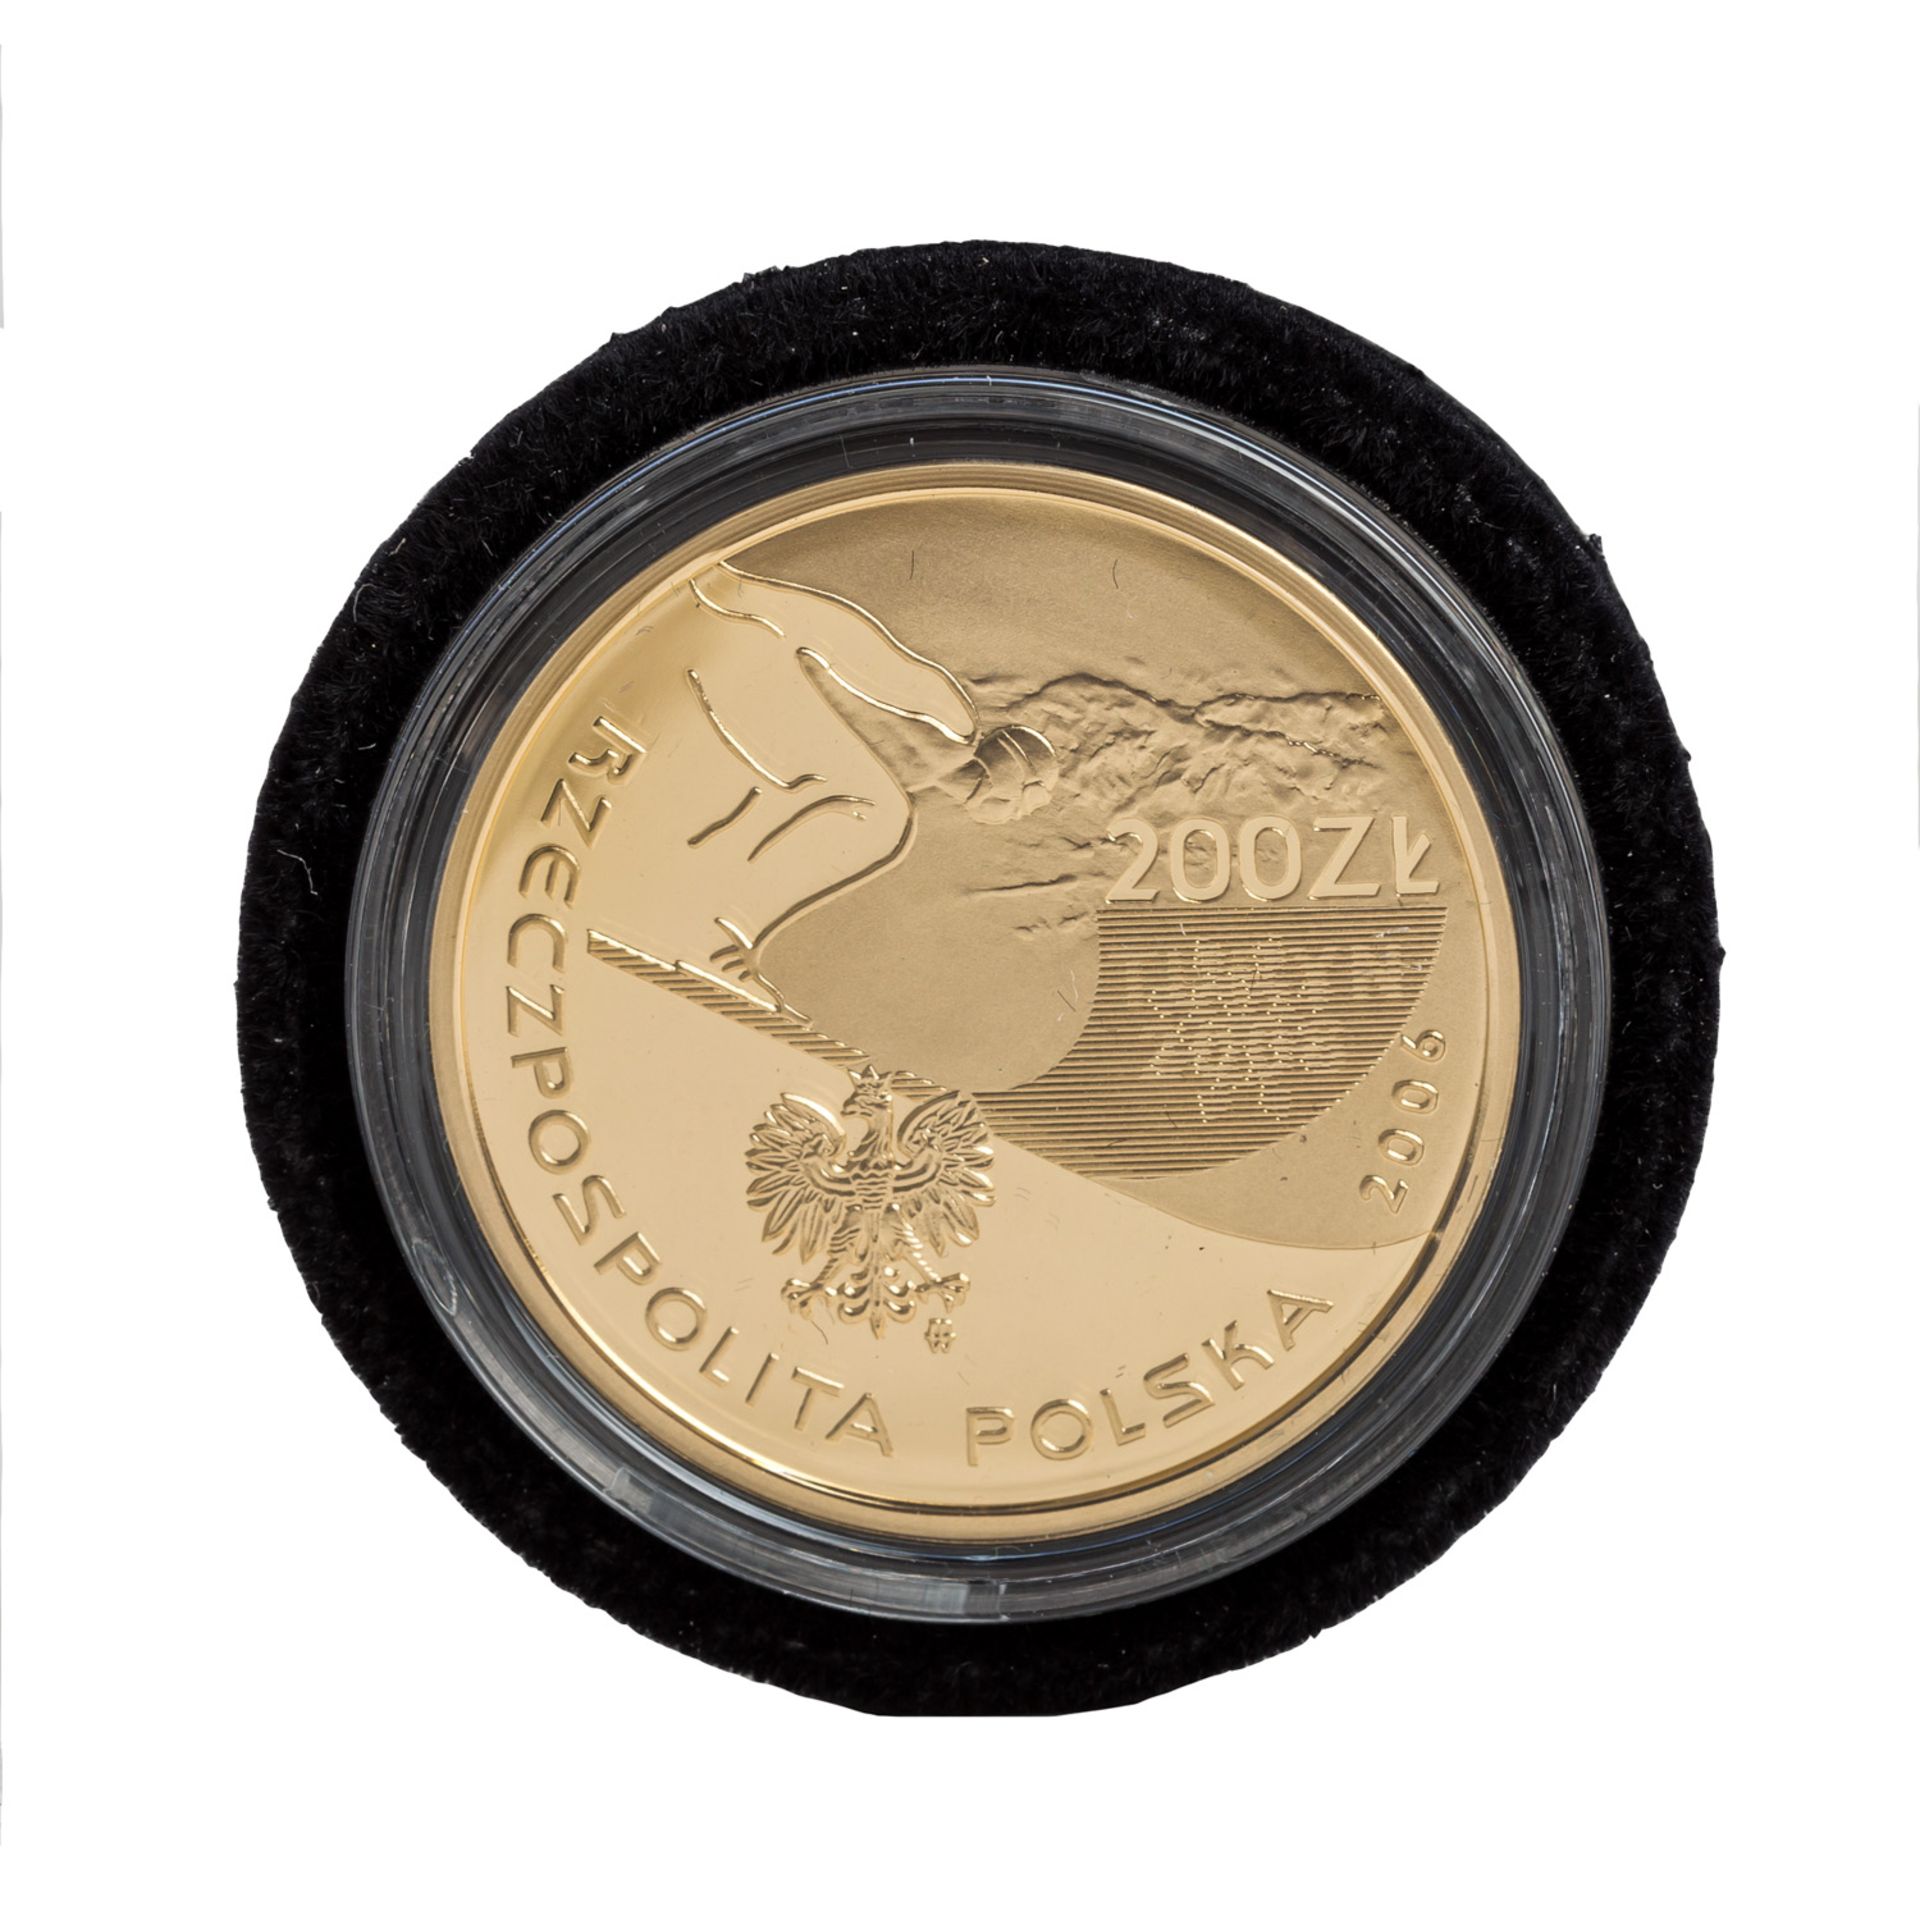 Polen/GOLD - 200 Zloty 2006, - Bild 2 aus 3